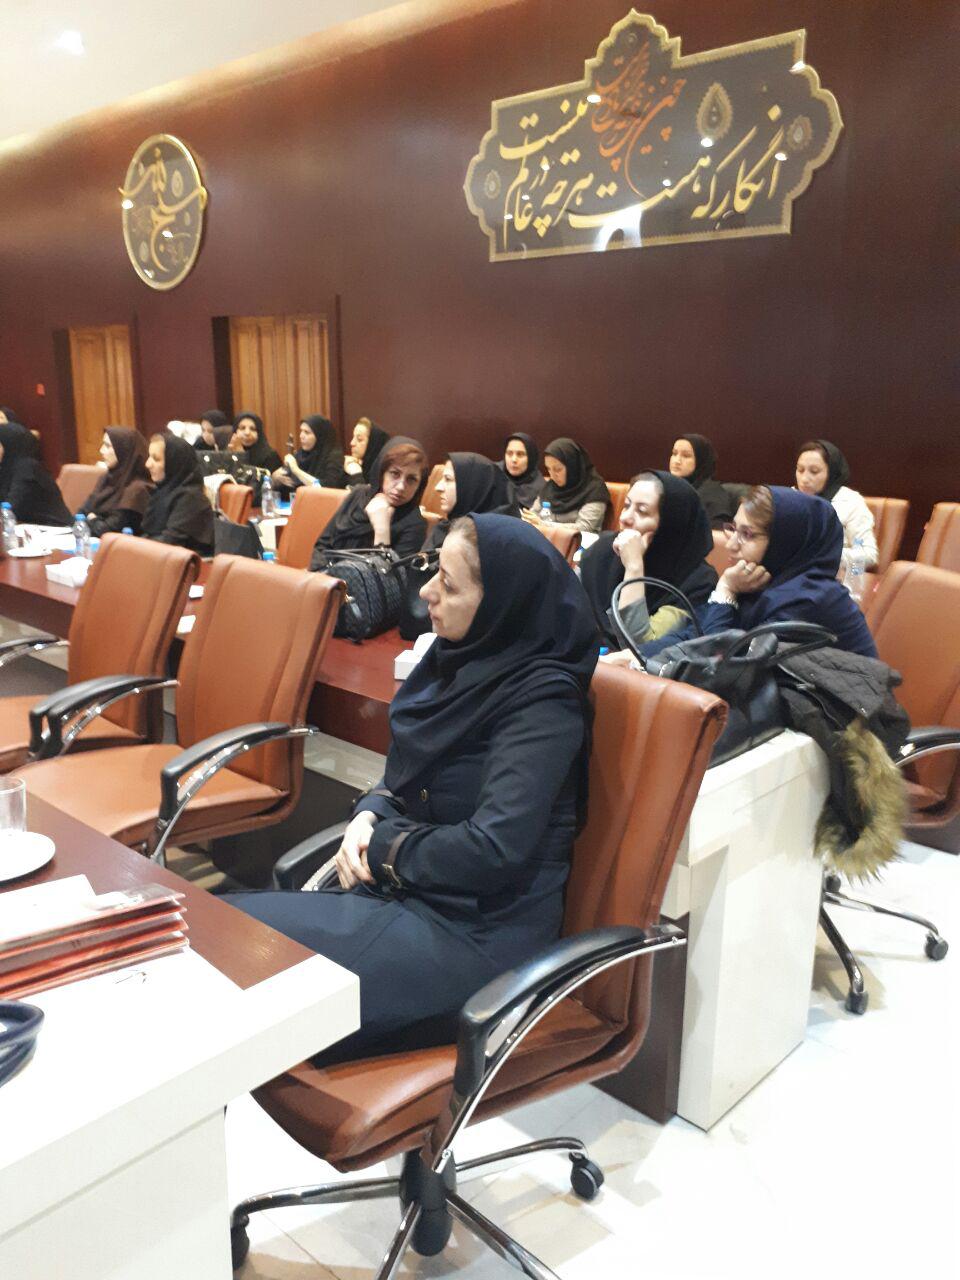 برگزاری سمینار آموزش پرستاری دستگاه های دیالیز  4008s Classic فرزنیوس در مشهد 25